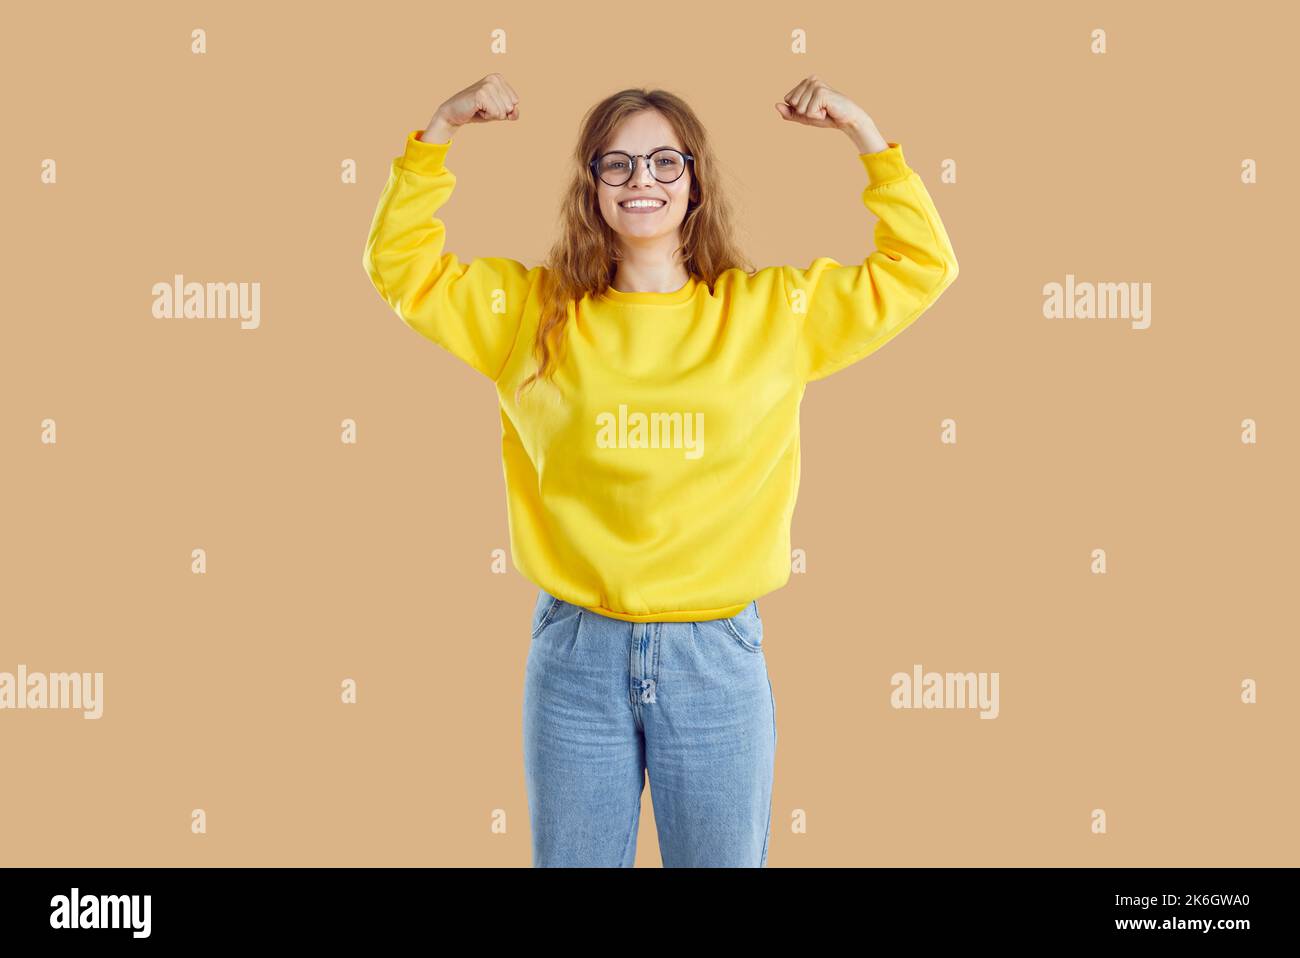 Fröhliches Teenager-Mädchen zeigt ihren Bizeps auf lustige Weise als Zeichen ihrer Stärke, ihres Erfolgs und ihrer Gesundheit. Stockfoto